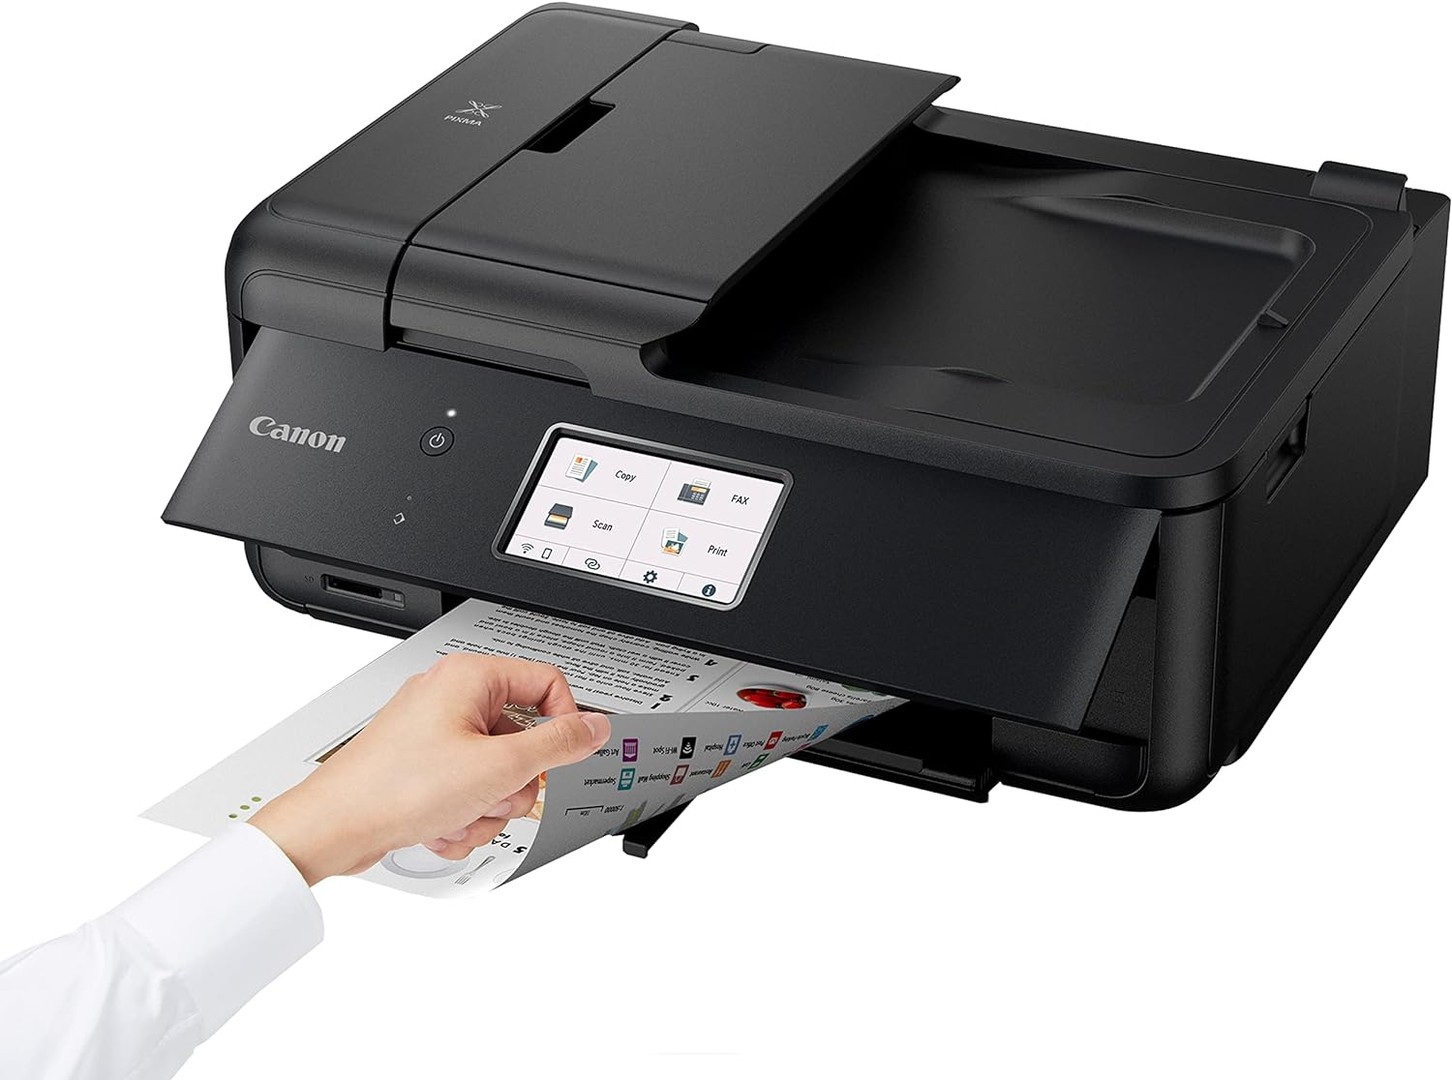 impresoras y scanners - Impresora Canon PIXMA TR8620a Multifuncional, fax, alimentador automático ADF 3